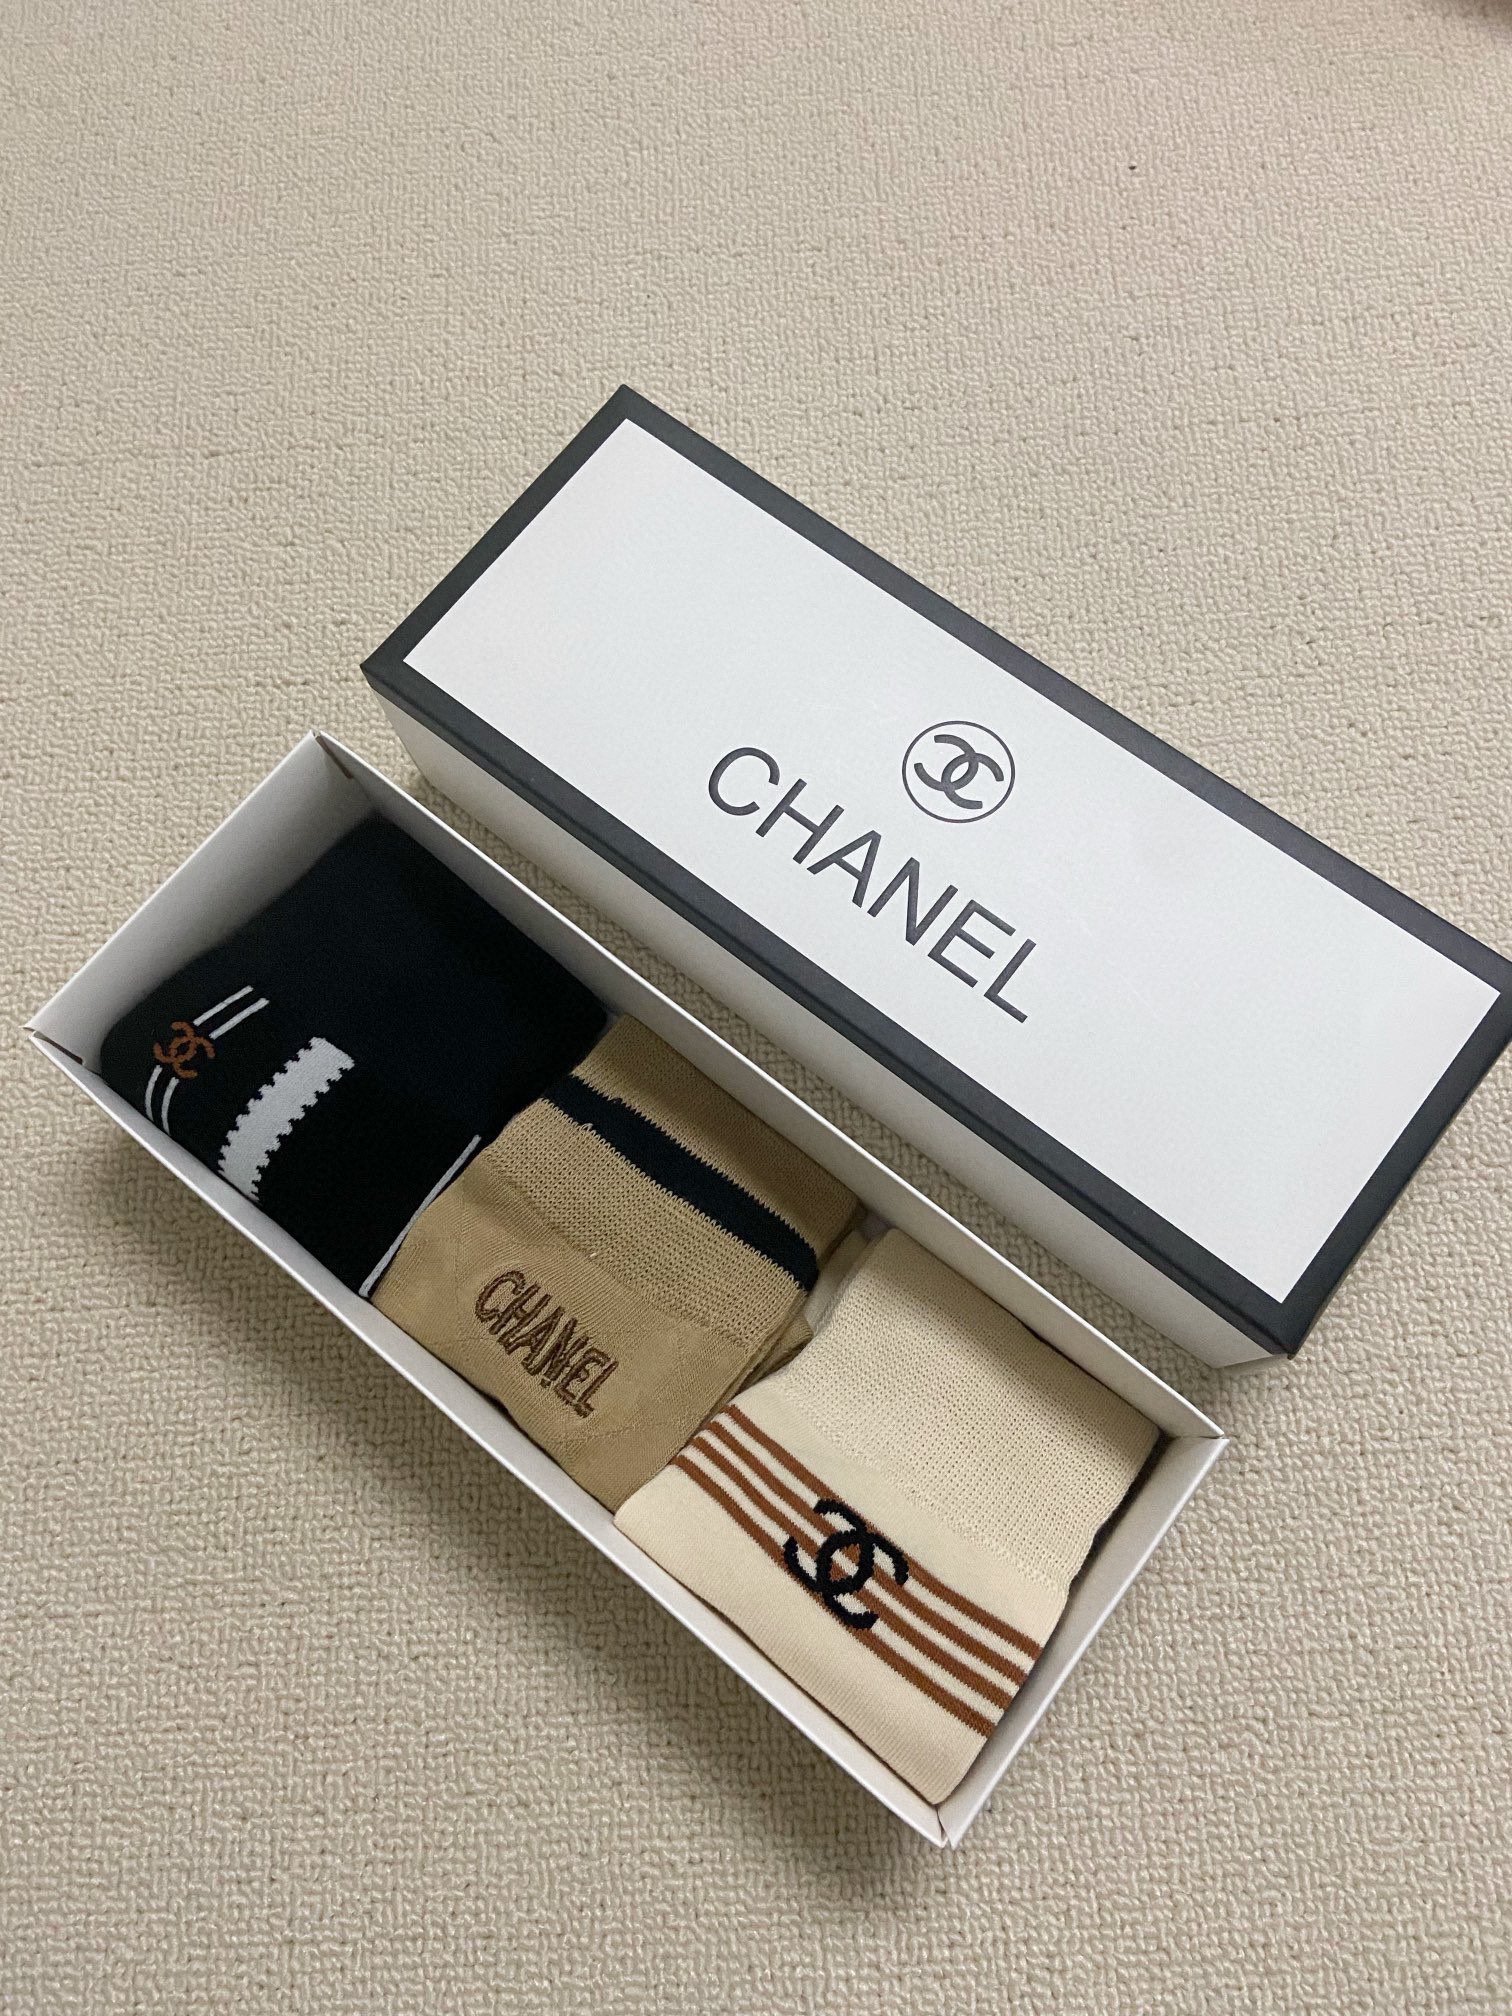 配包装一盒3双Chanel香奈儿经典刺绣字母logo纯棉中筒袜ins爆款！专柜在售ing好看到爆炸！超高